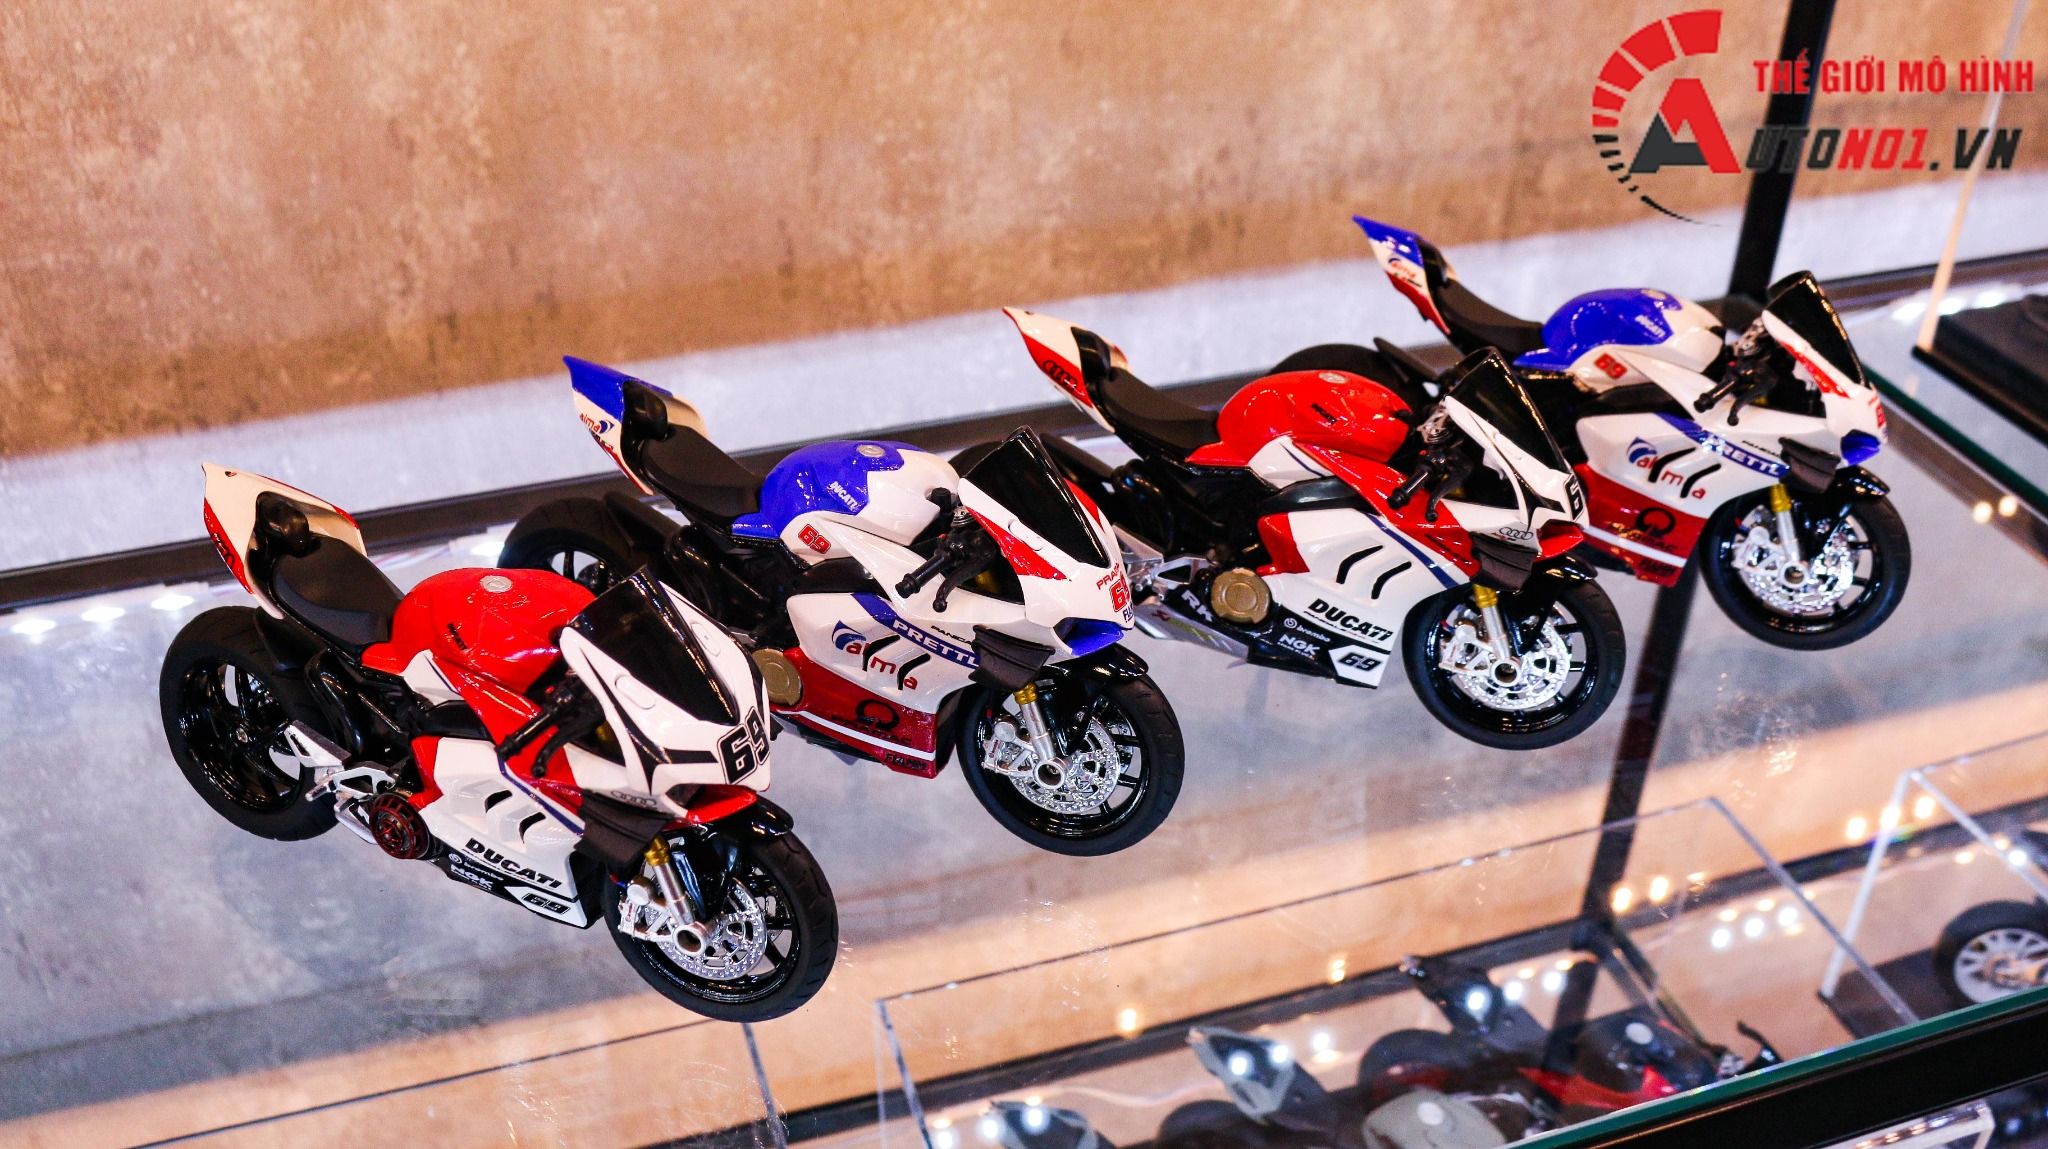  Mô hình xe độ Ducati Panigale V4s Pramac Alma Nồi Khô Tỉ Lệ 1:12 Autono1 D223i 